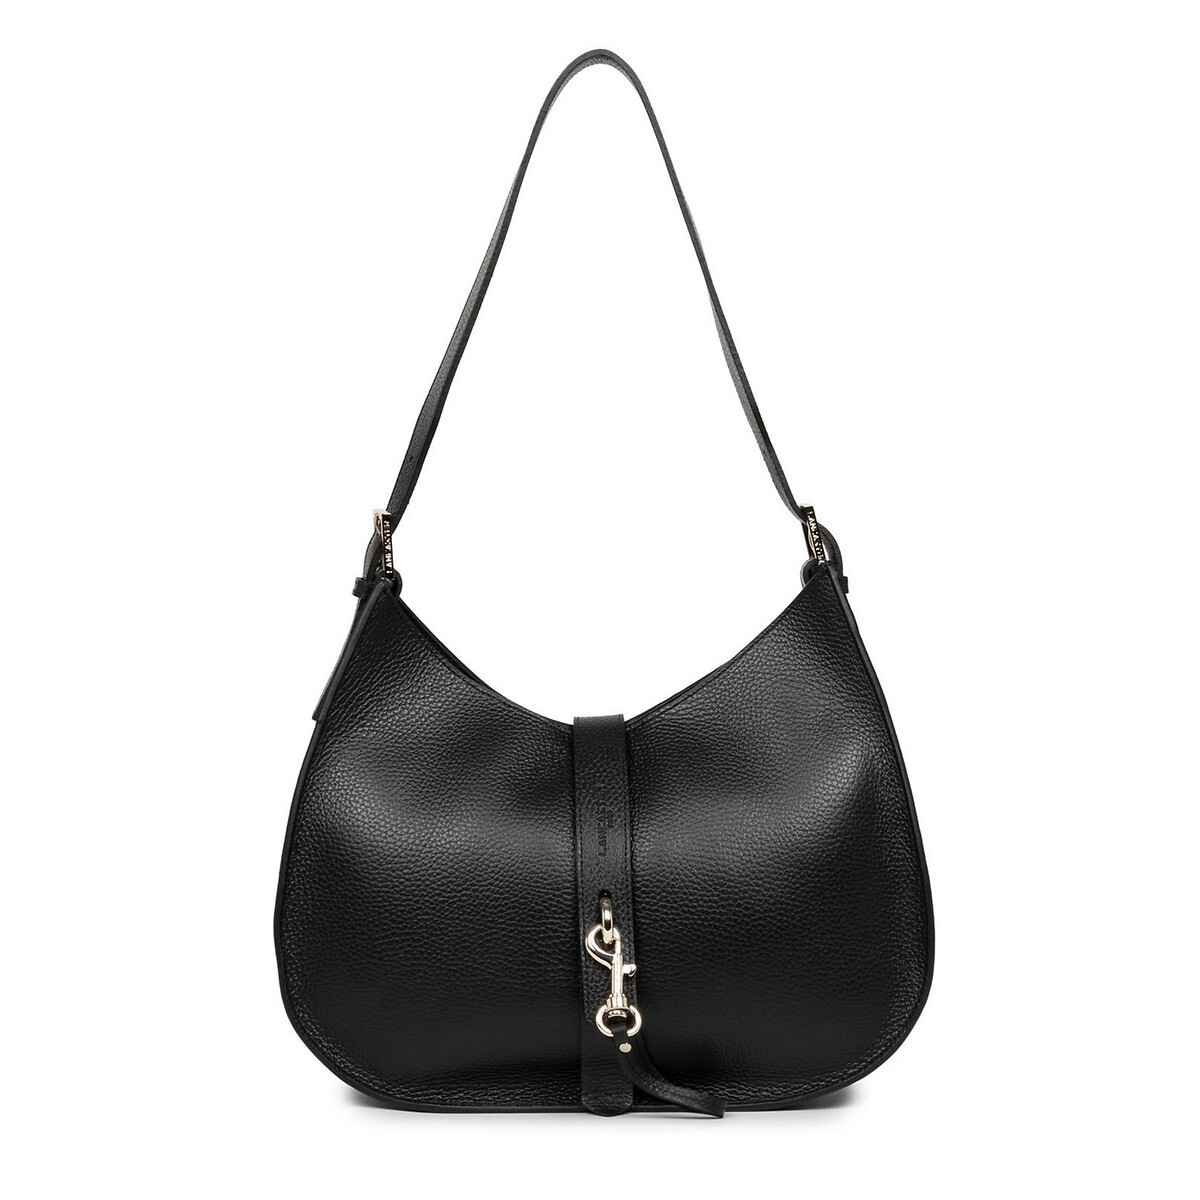 Сумка FOULONN DOUBLE единый размер черный сумка багет кожаная женская lmr 2035 1j